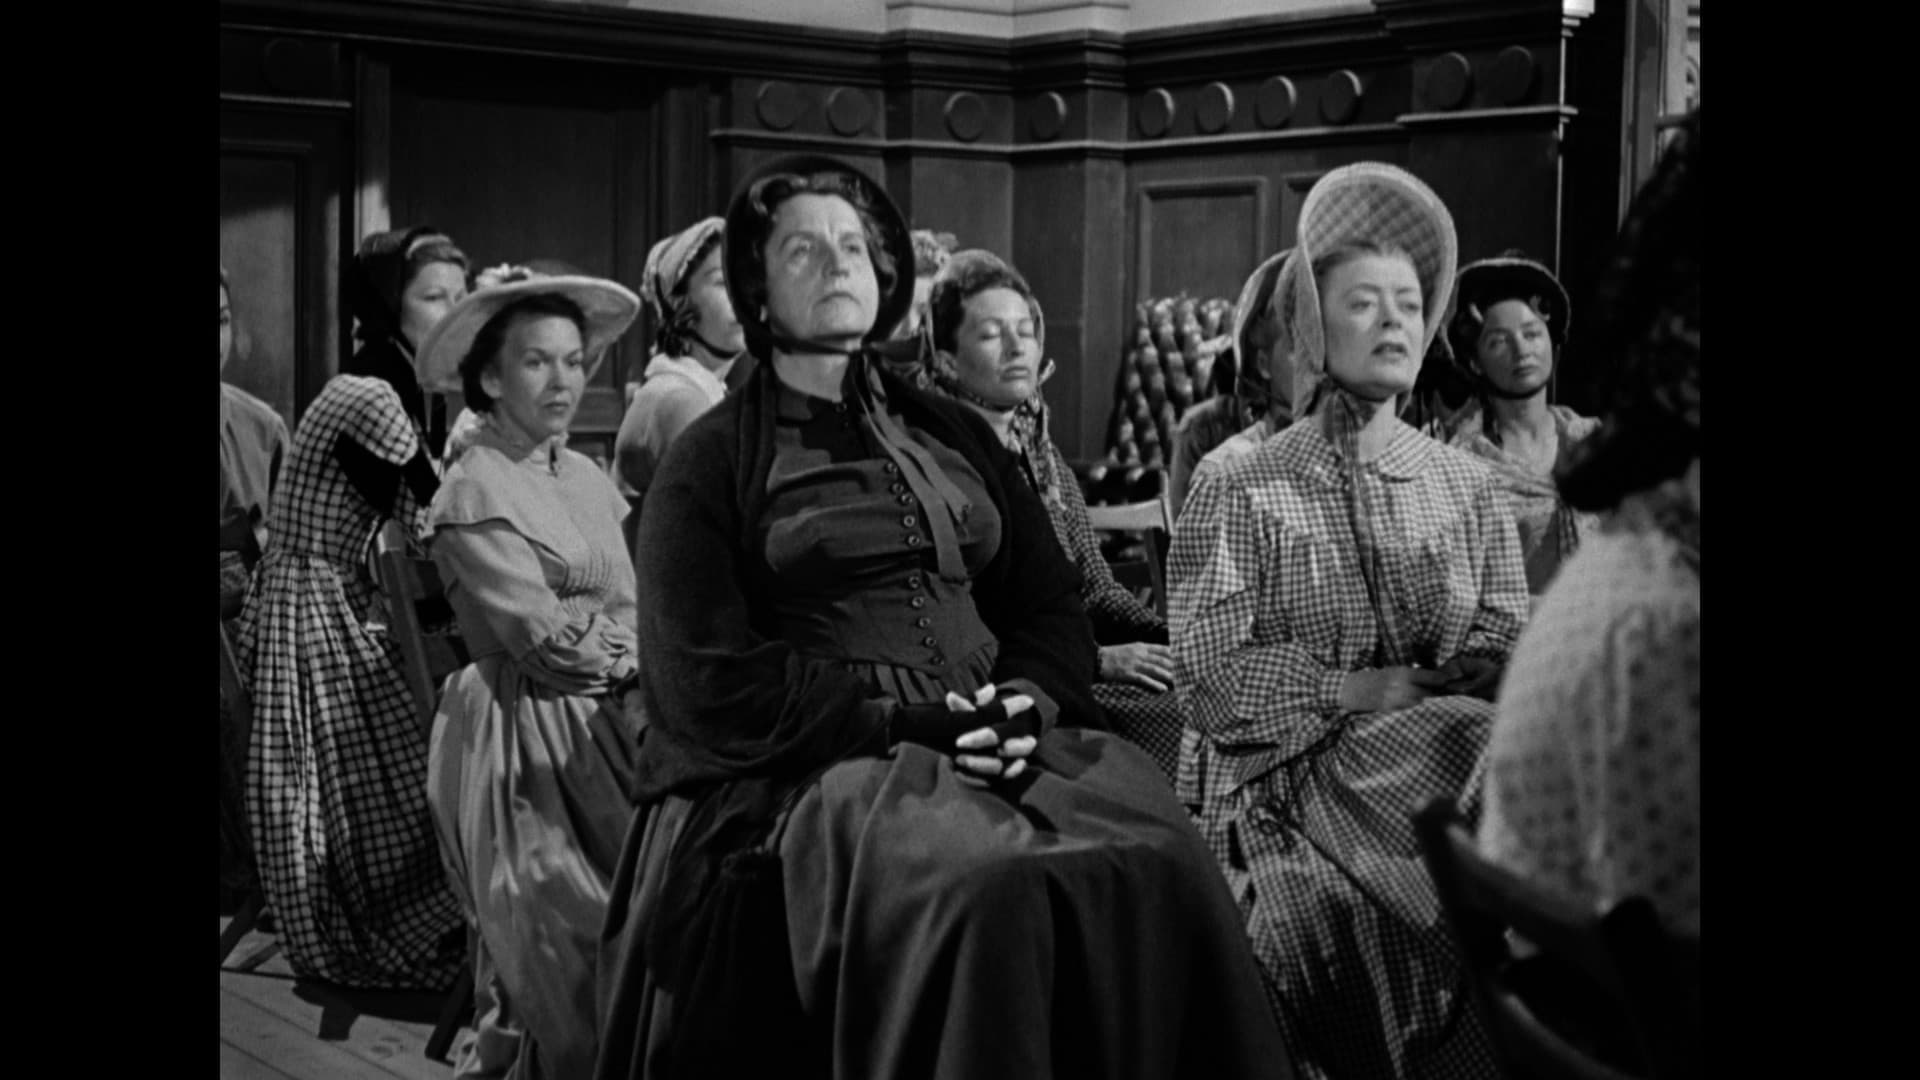 Westward The Women (1951) [Warner Archive Blu-ray review] 9